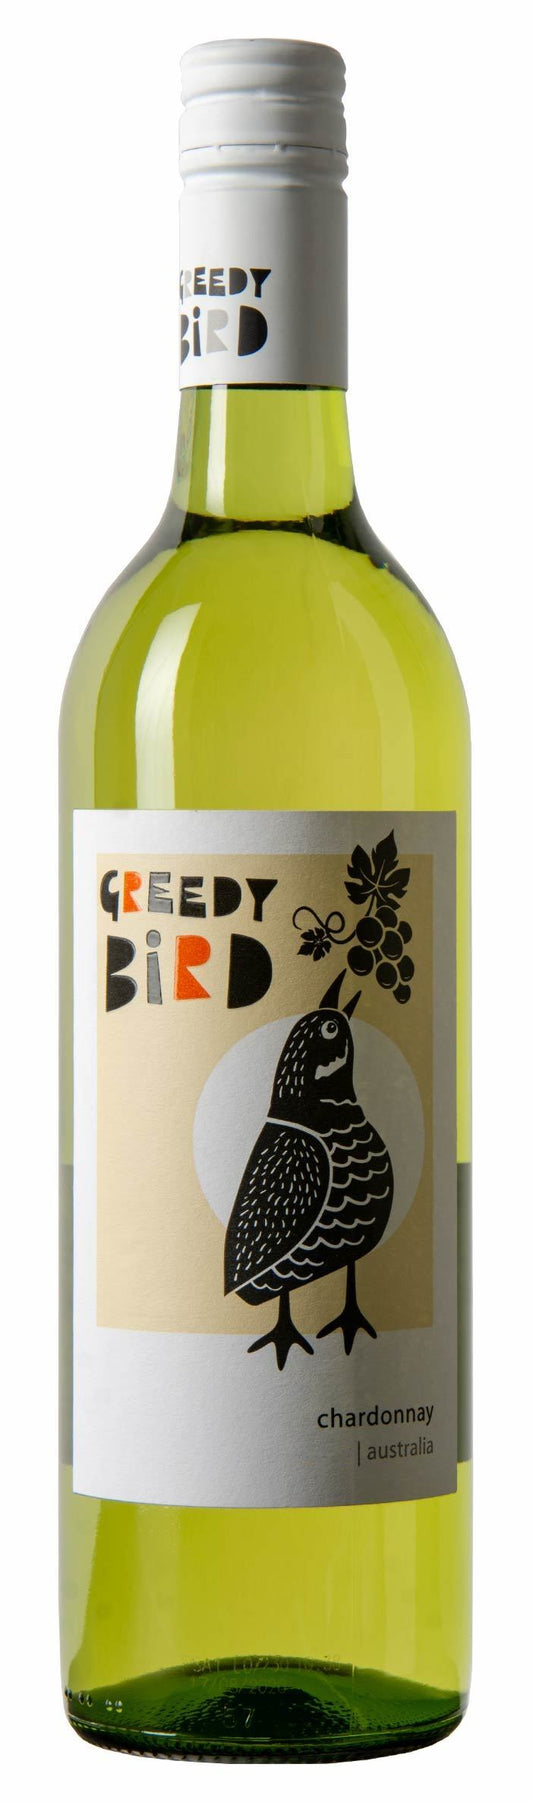 *Greedy Bird Chardonnay*